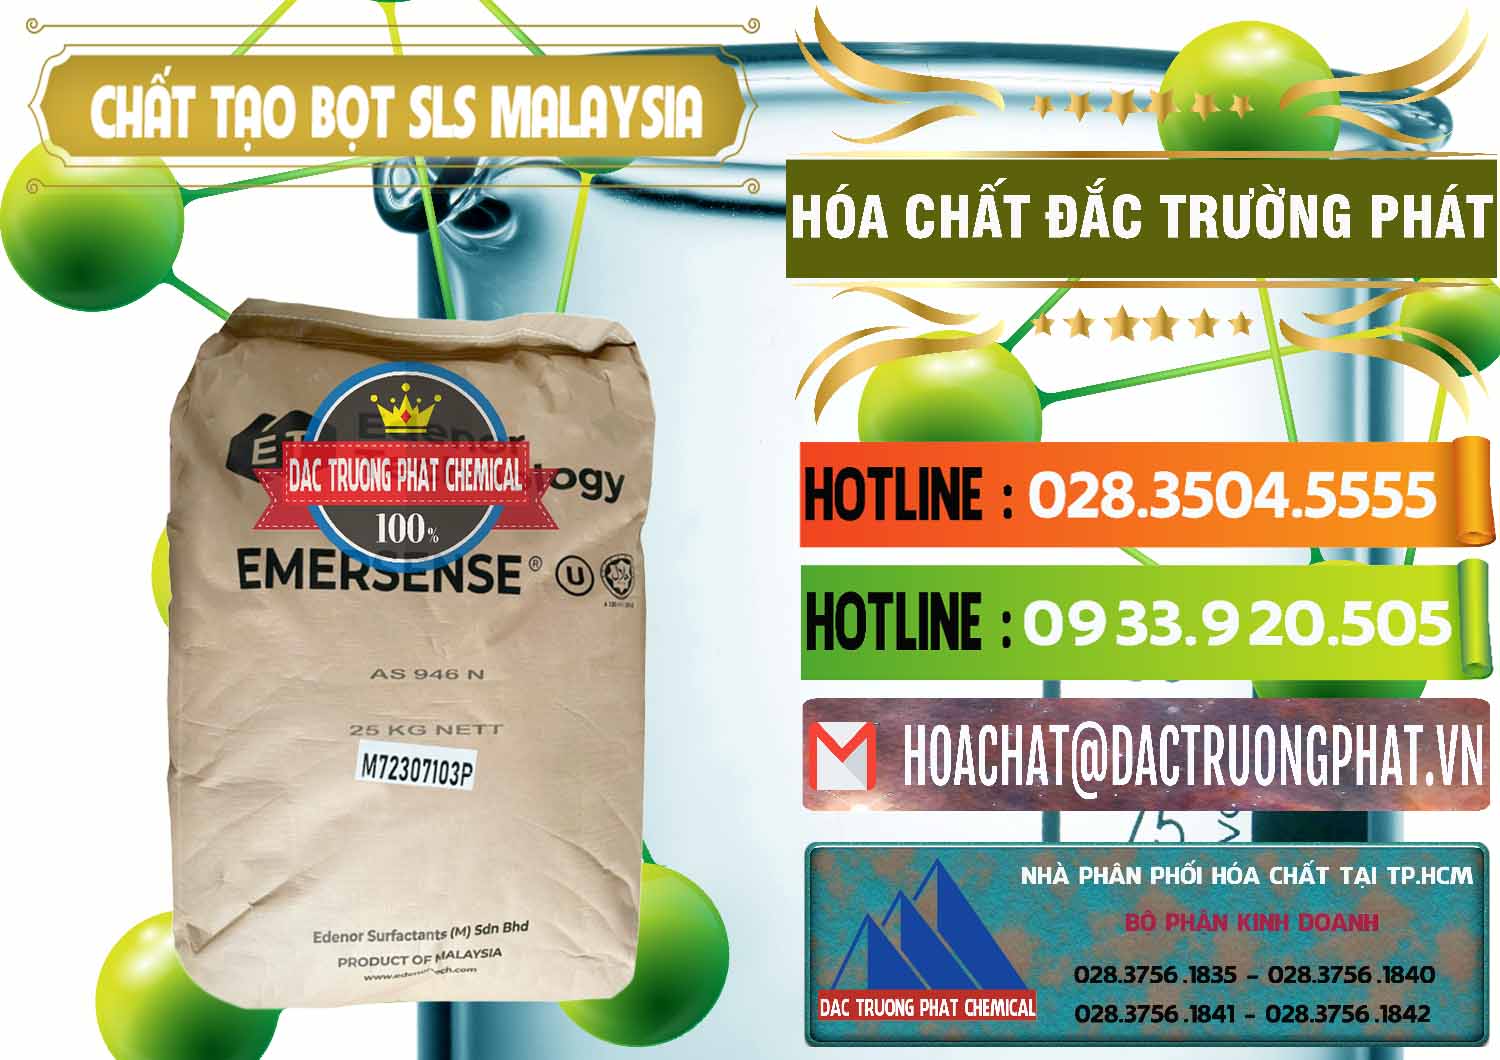 Công ty cung cấp - bán Chất Tạo Bọt SLS Emersense Mã Lai Malaysia - 0381 - Cty chuyên cung cấp và nhập khẩu hóa chất tại TP.HCM - cungcaphoachat.com.vn